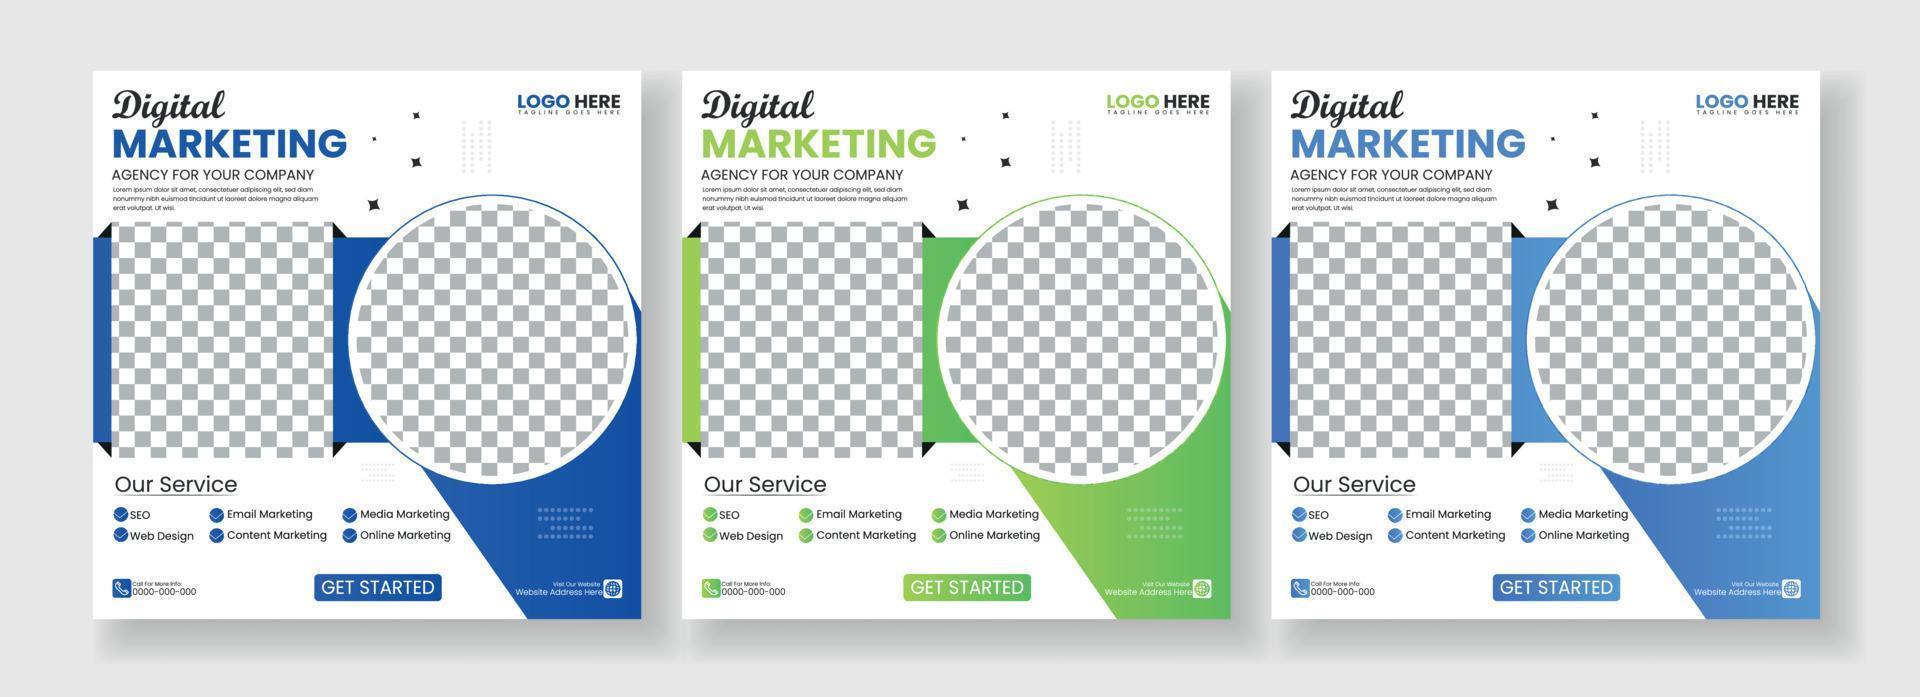 negocio márketing agencia promoción social medios de comunicación enviar modelo. editable cuadrado bandera diseño con sitio para el foto. vector